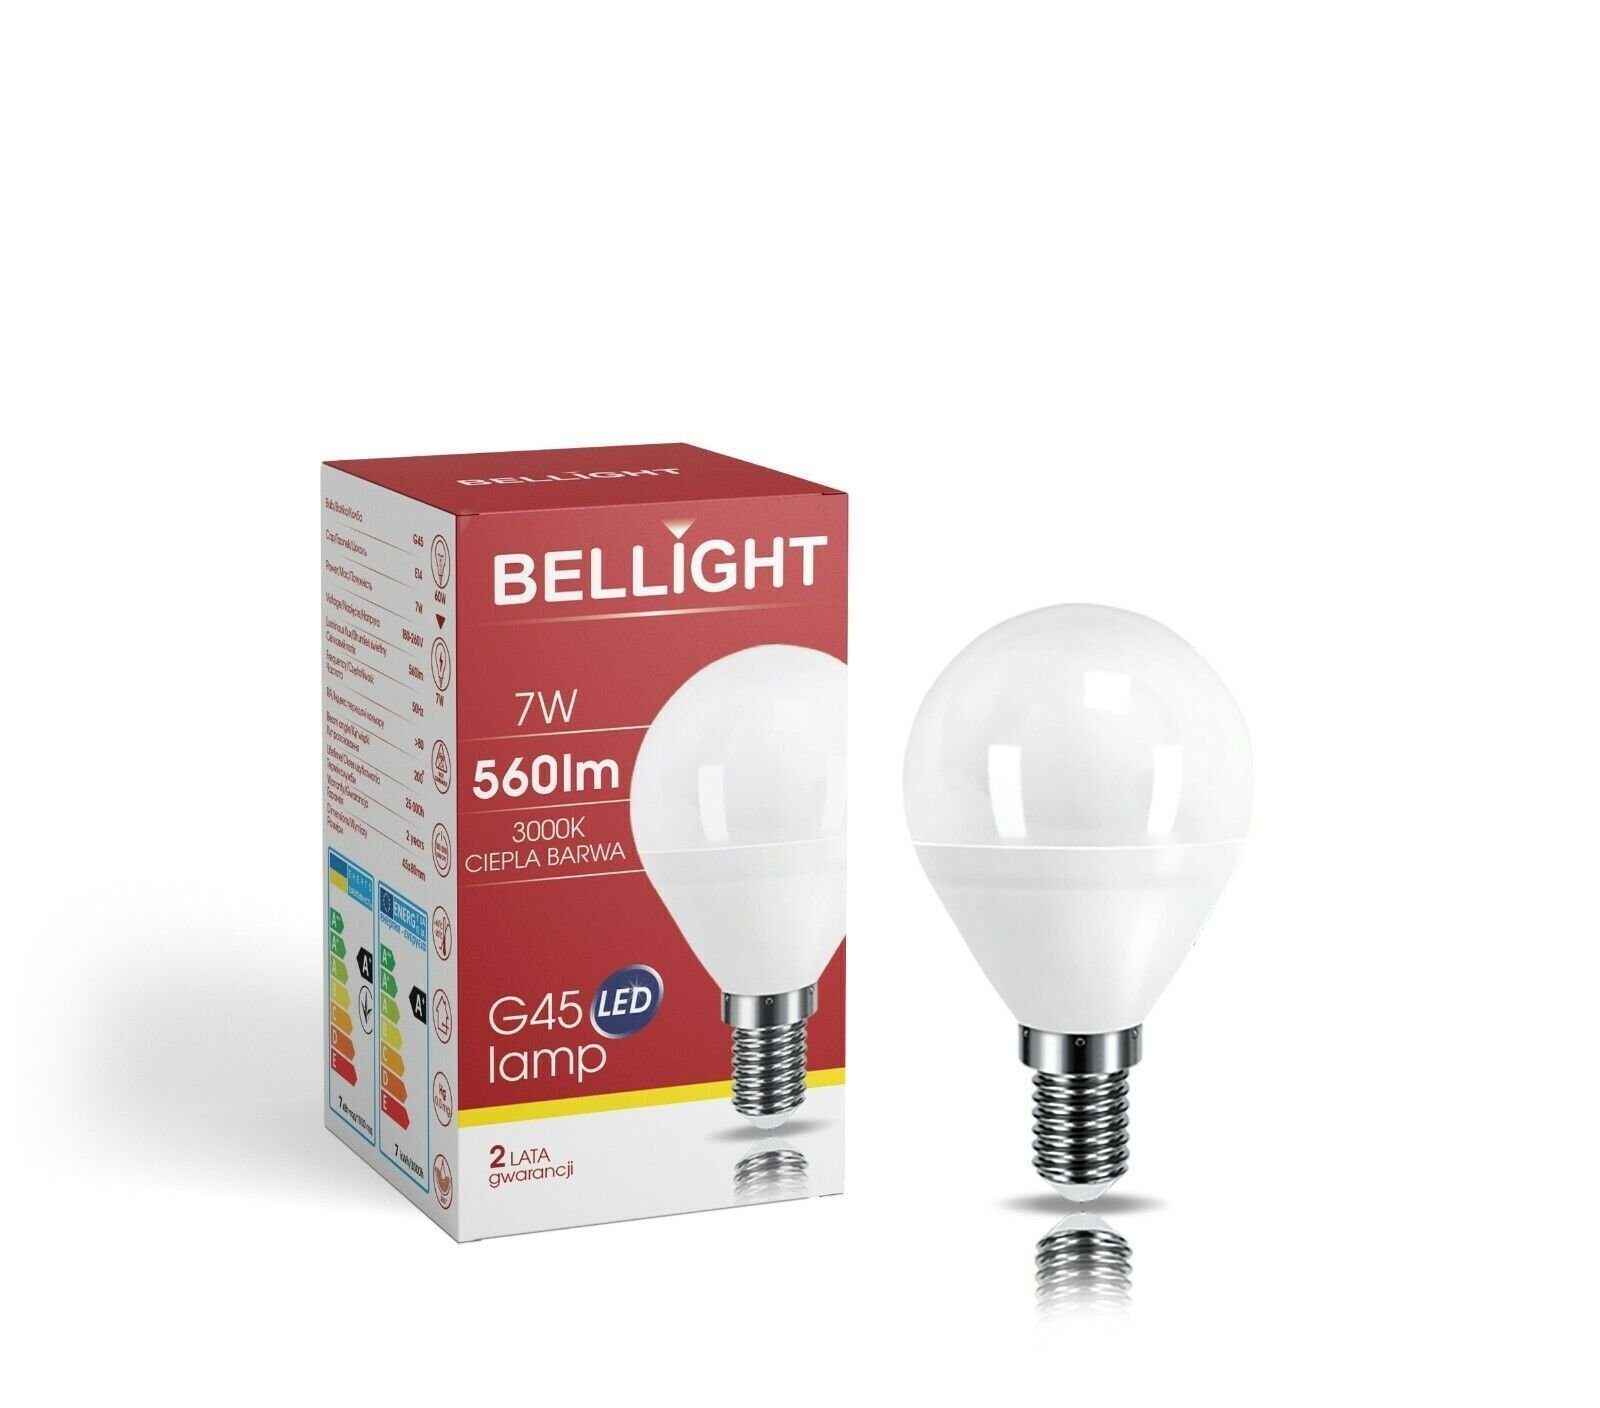 60W Warmweiß LED-Leuchtmittel Tropfenform Birne = 7W G45 560lm Bellight 230V 3000K, LED E14, E14 Warmweiß 200°